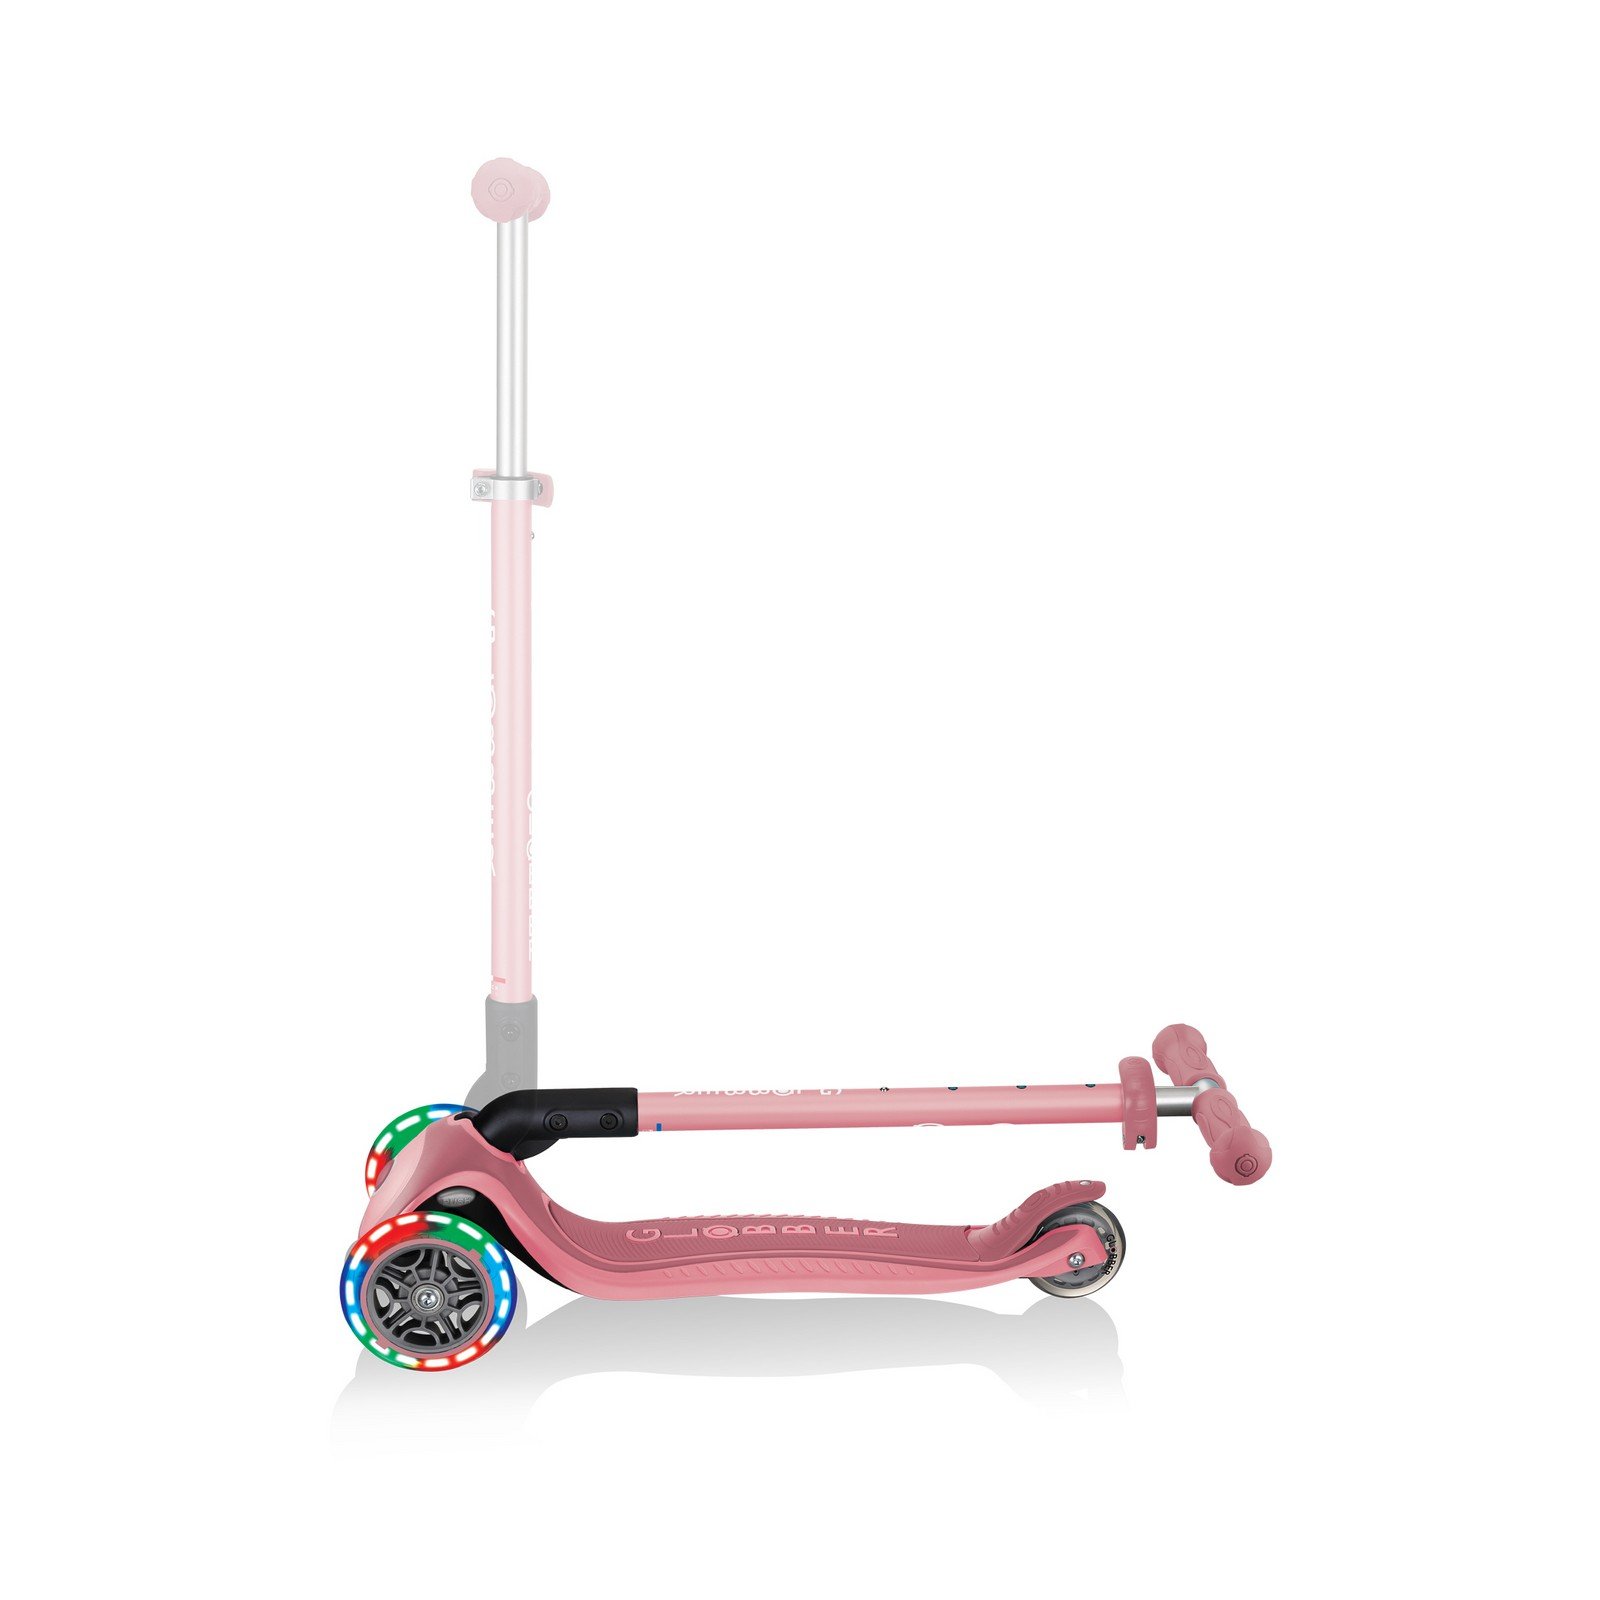 Самокат Globber Primo foldable plus lights, колеса з підсвічуванням, пастельно-рожевий (439-210) - фото 7